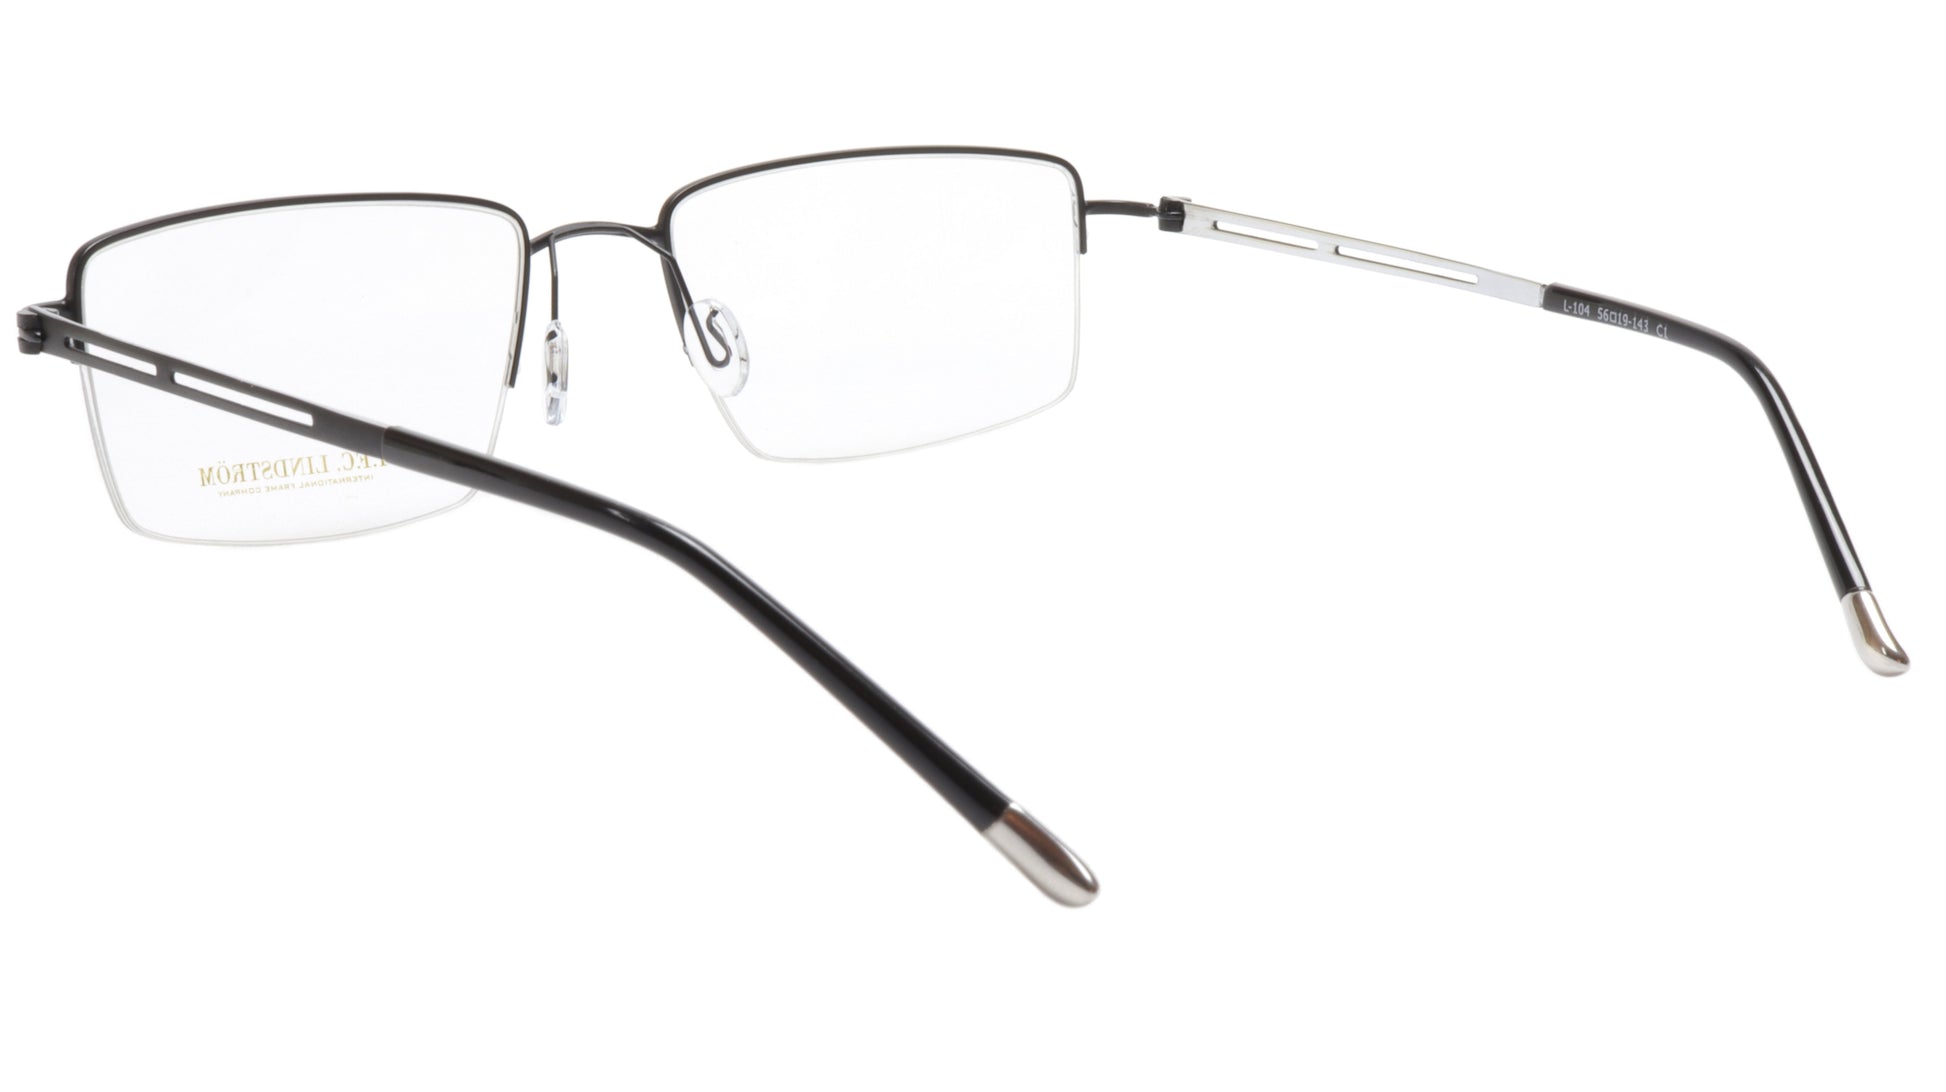 LINDSTROM L-104 C1 Eyeglasses Frame Metal Gunmetal Italy Hand Made 56-19-143 - Frame Bay